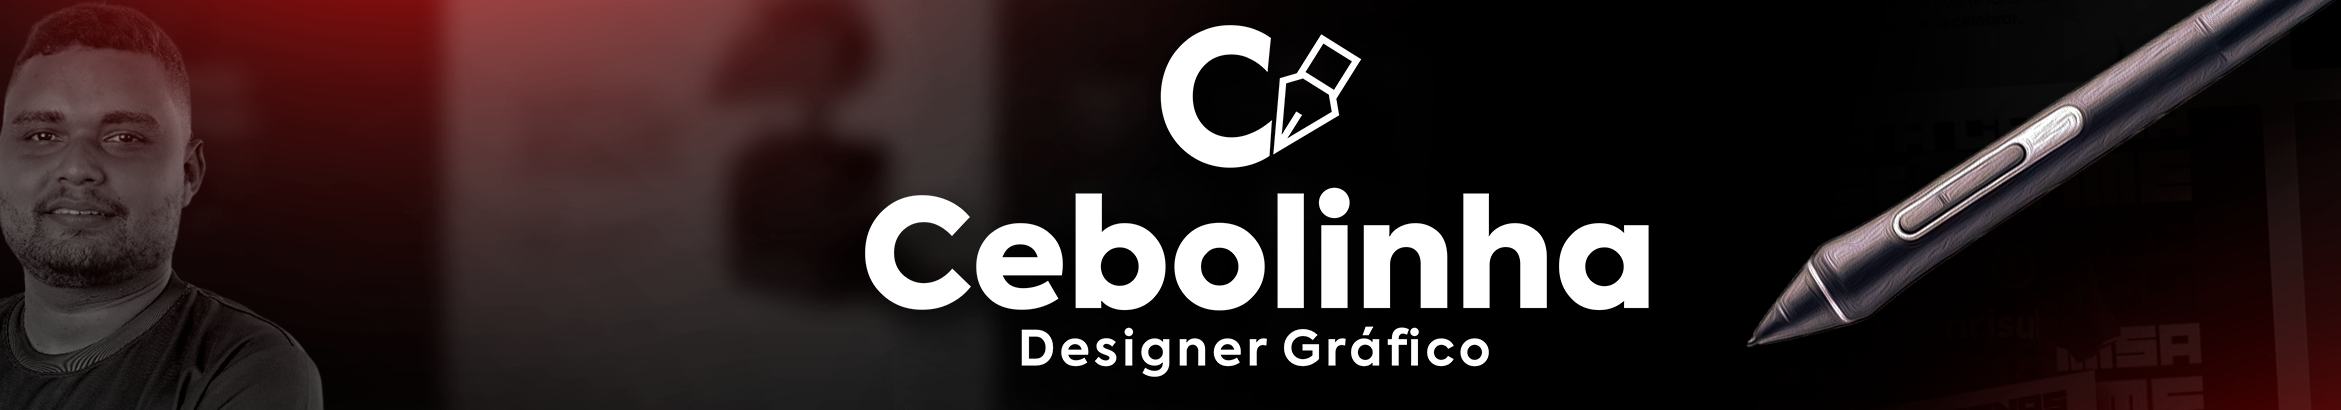 Cebolinha Designers profilbanner